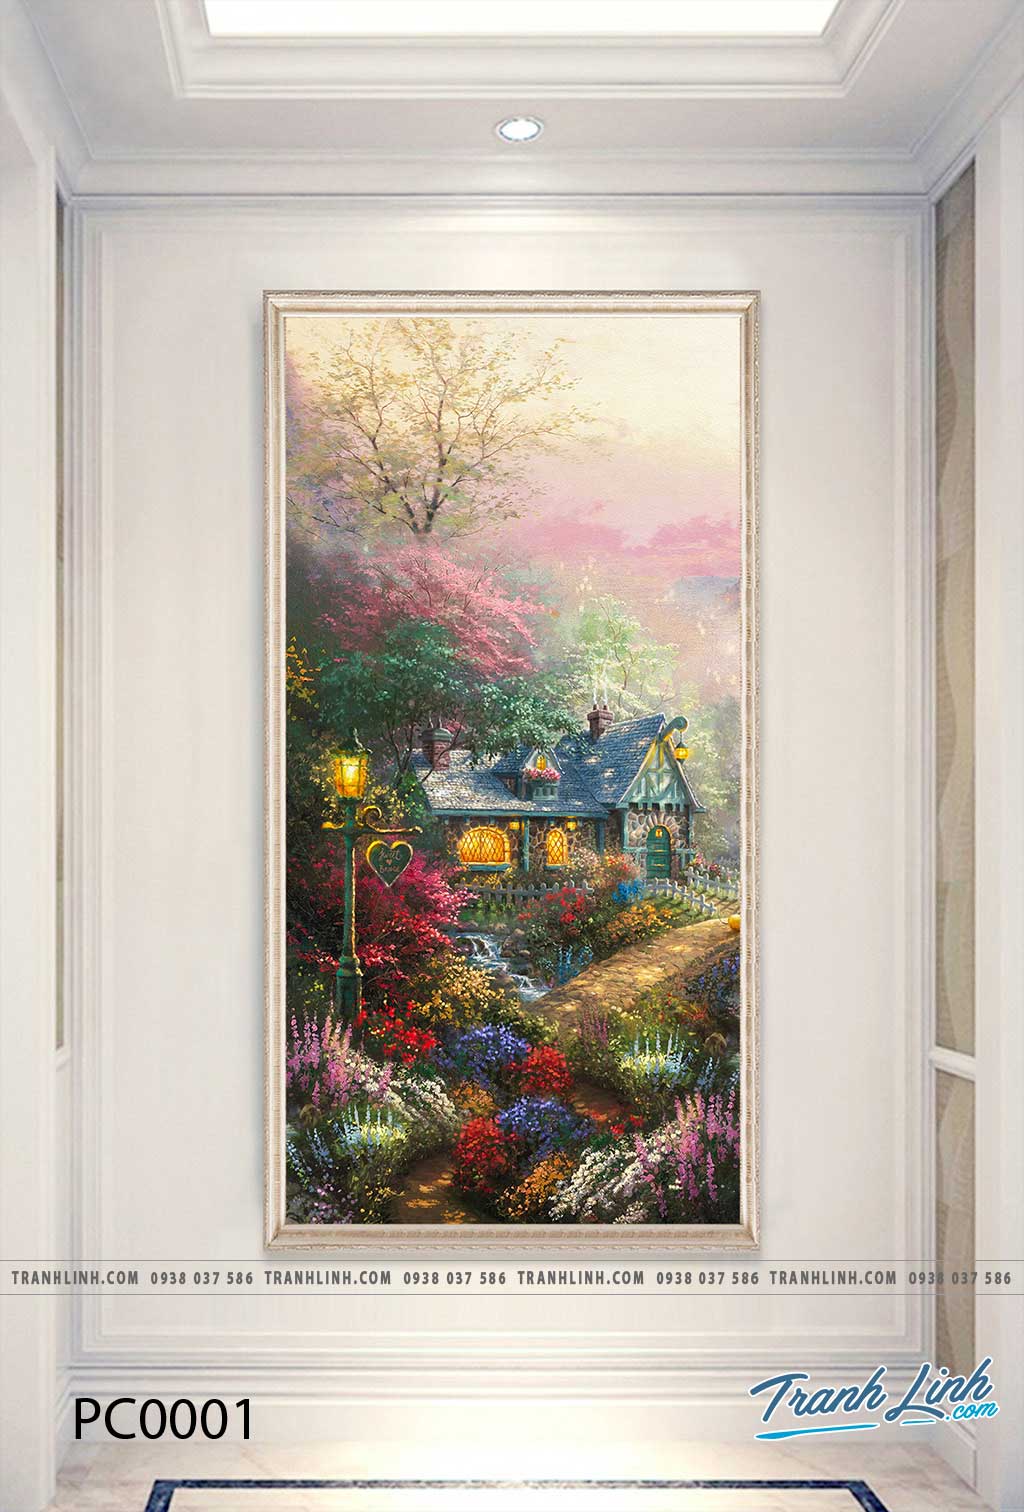 Tranh Canvas Phong Cảnh Ngôi Nhà Trong Khu Rừng ( Hoạ Sĩ Thomas Kinkade) -  PC0001 - Tranh Linh